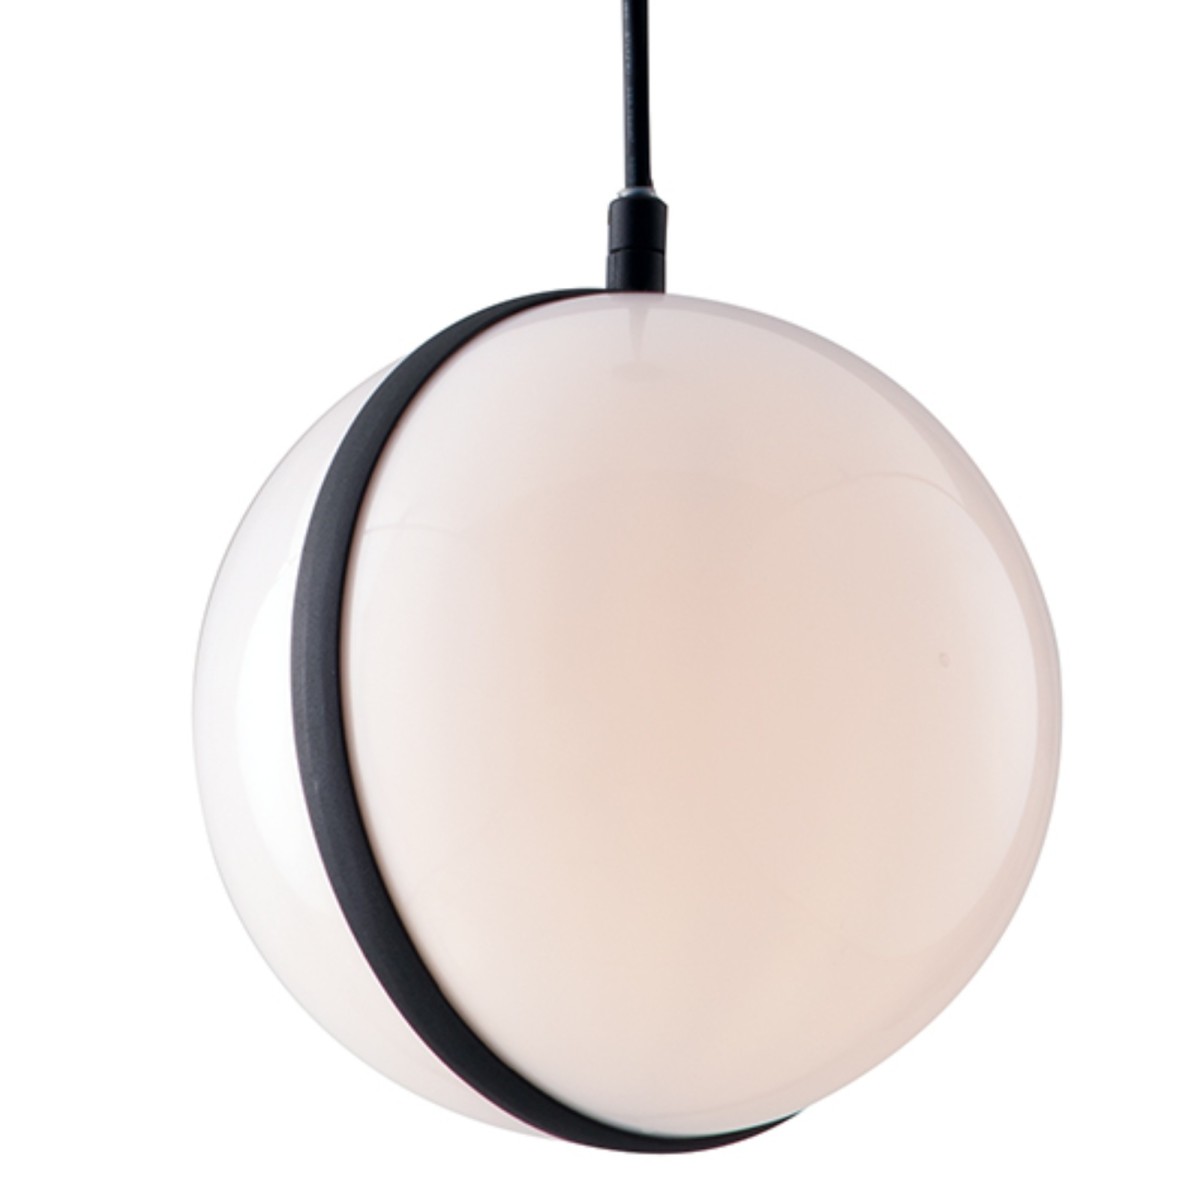 ORBIT suspension plafonnier avec sphère en aluminium noir et diffuseur acrylique LED intégré